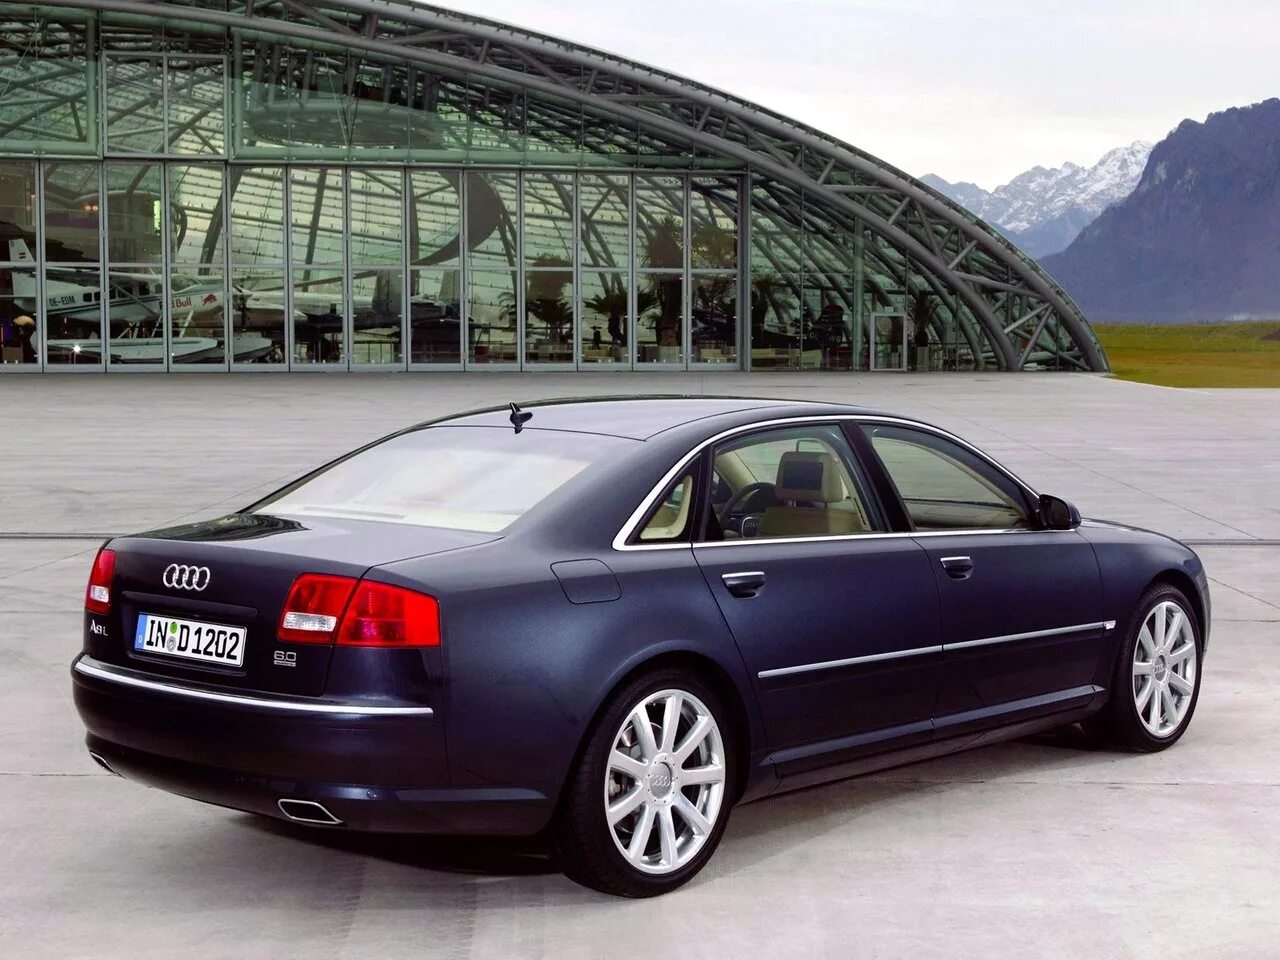 Ауди а8 3.3. Audi a8 2005. Audi a8l 2005. Audi a8 d3 2005. Audi a8 d3 long 2007.